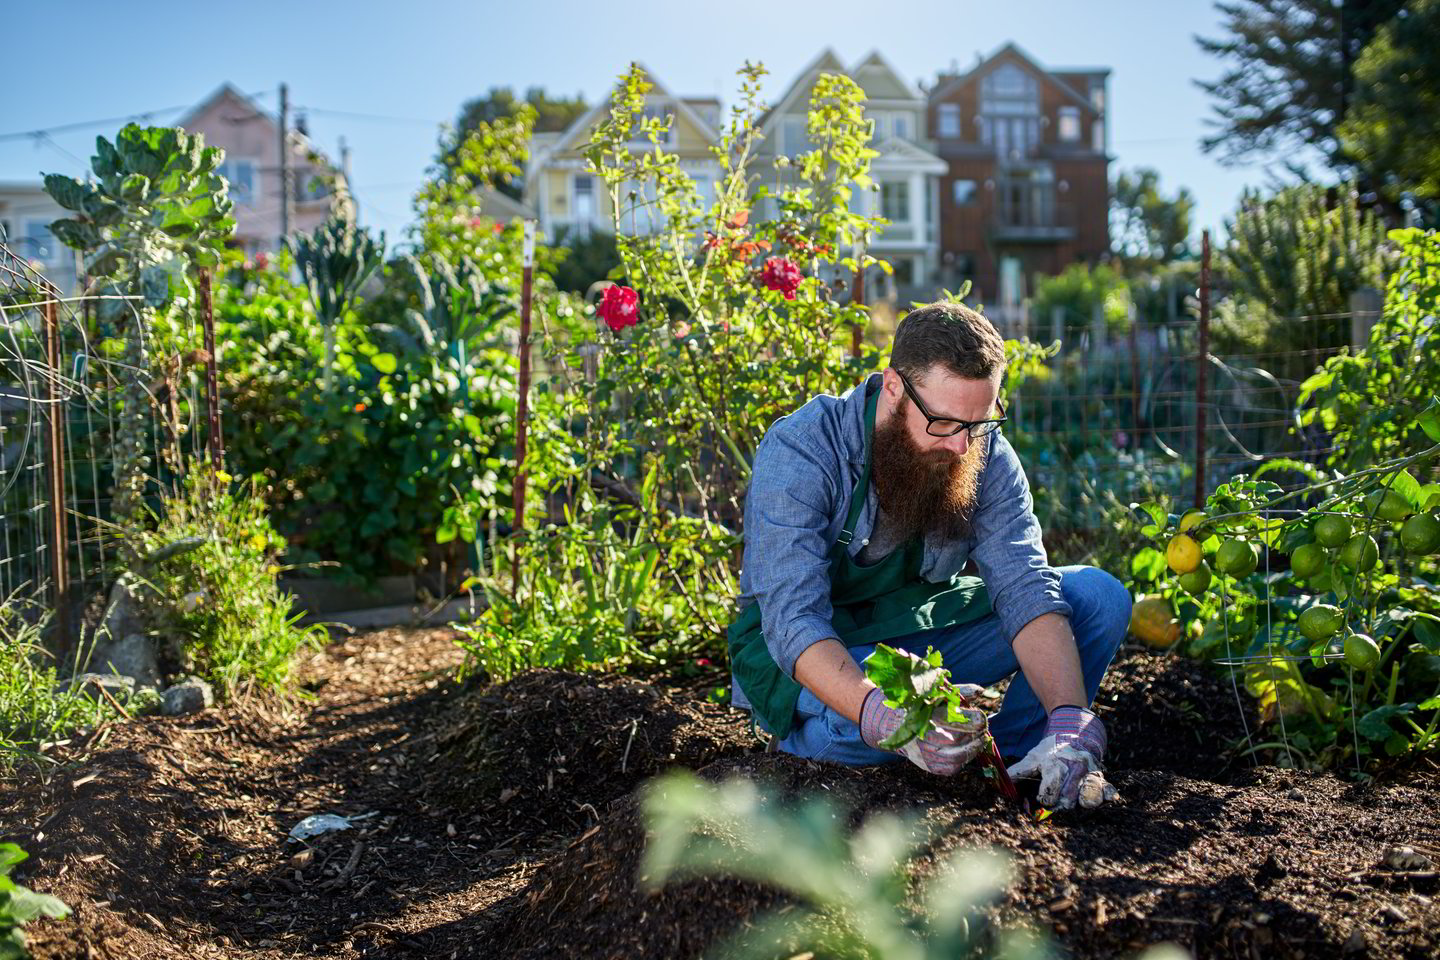  Tyrimuose pateikti duomenys byloja, kad sodininkai pasižymi geresne fizine sveikata, mažesniu antsvoriu ir bendrai yra labiau patenkinti gyvenimu.<br> Shutterstock nuotr.